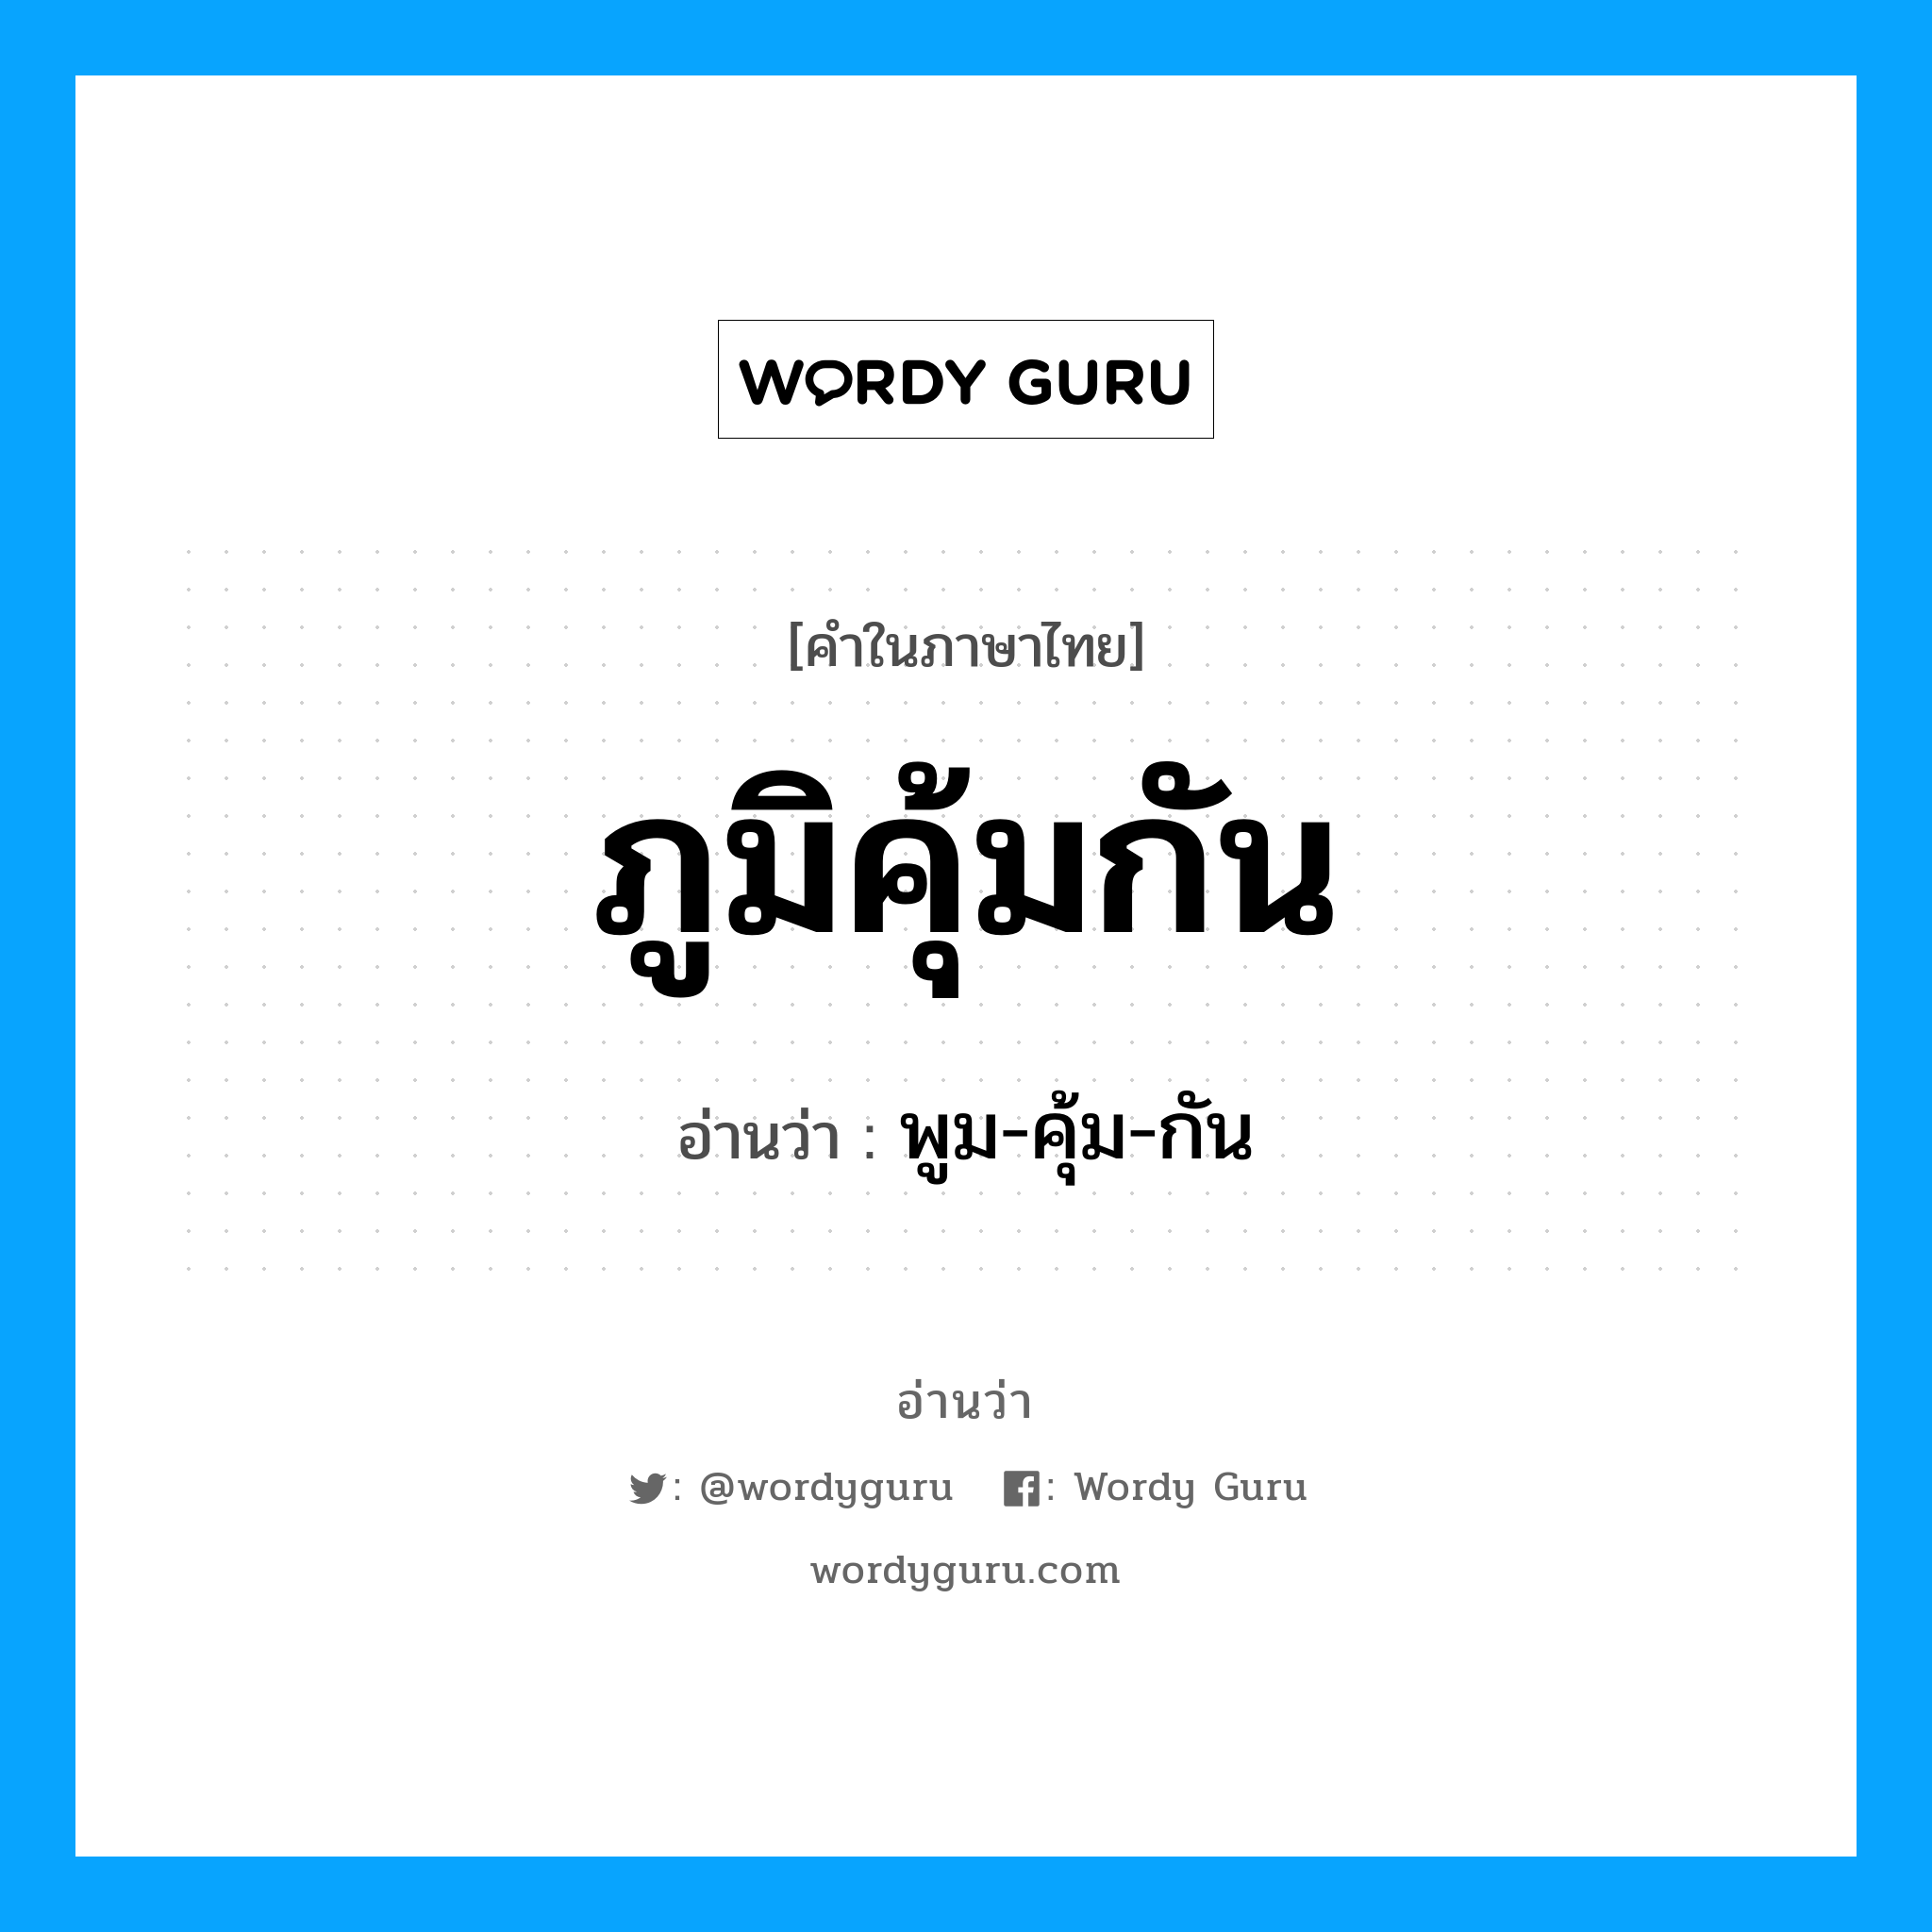 พูม-คุ้ม-กัน เป็นคำอ่านของคำไหน?, คำในภาษาไทย พูม-คุ้ม-กัน อ่านว่า ภูมิคุ้มกัน